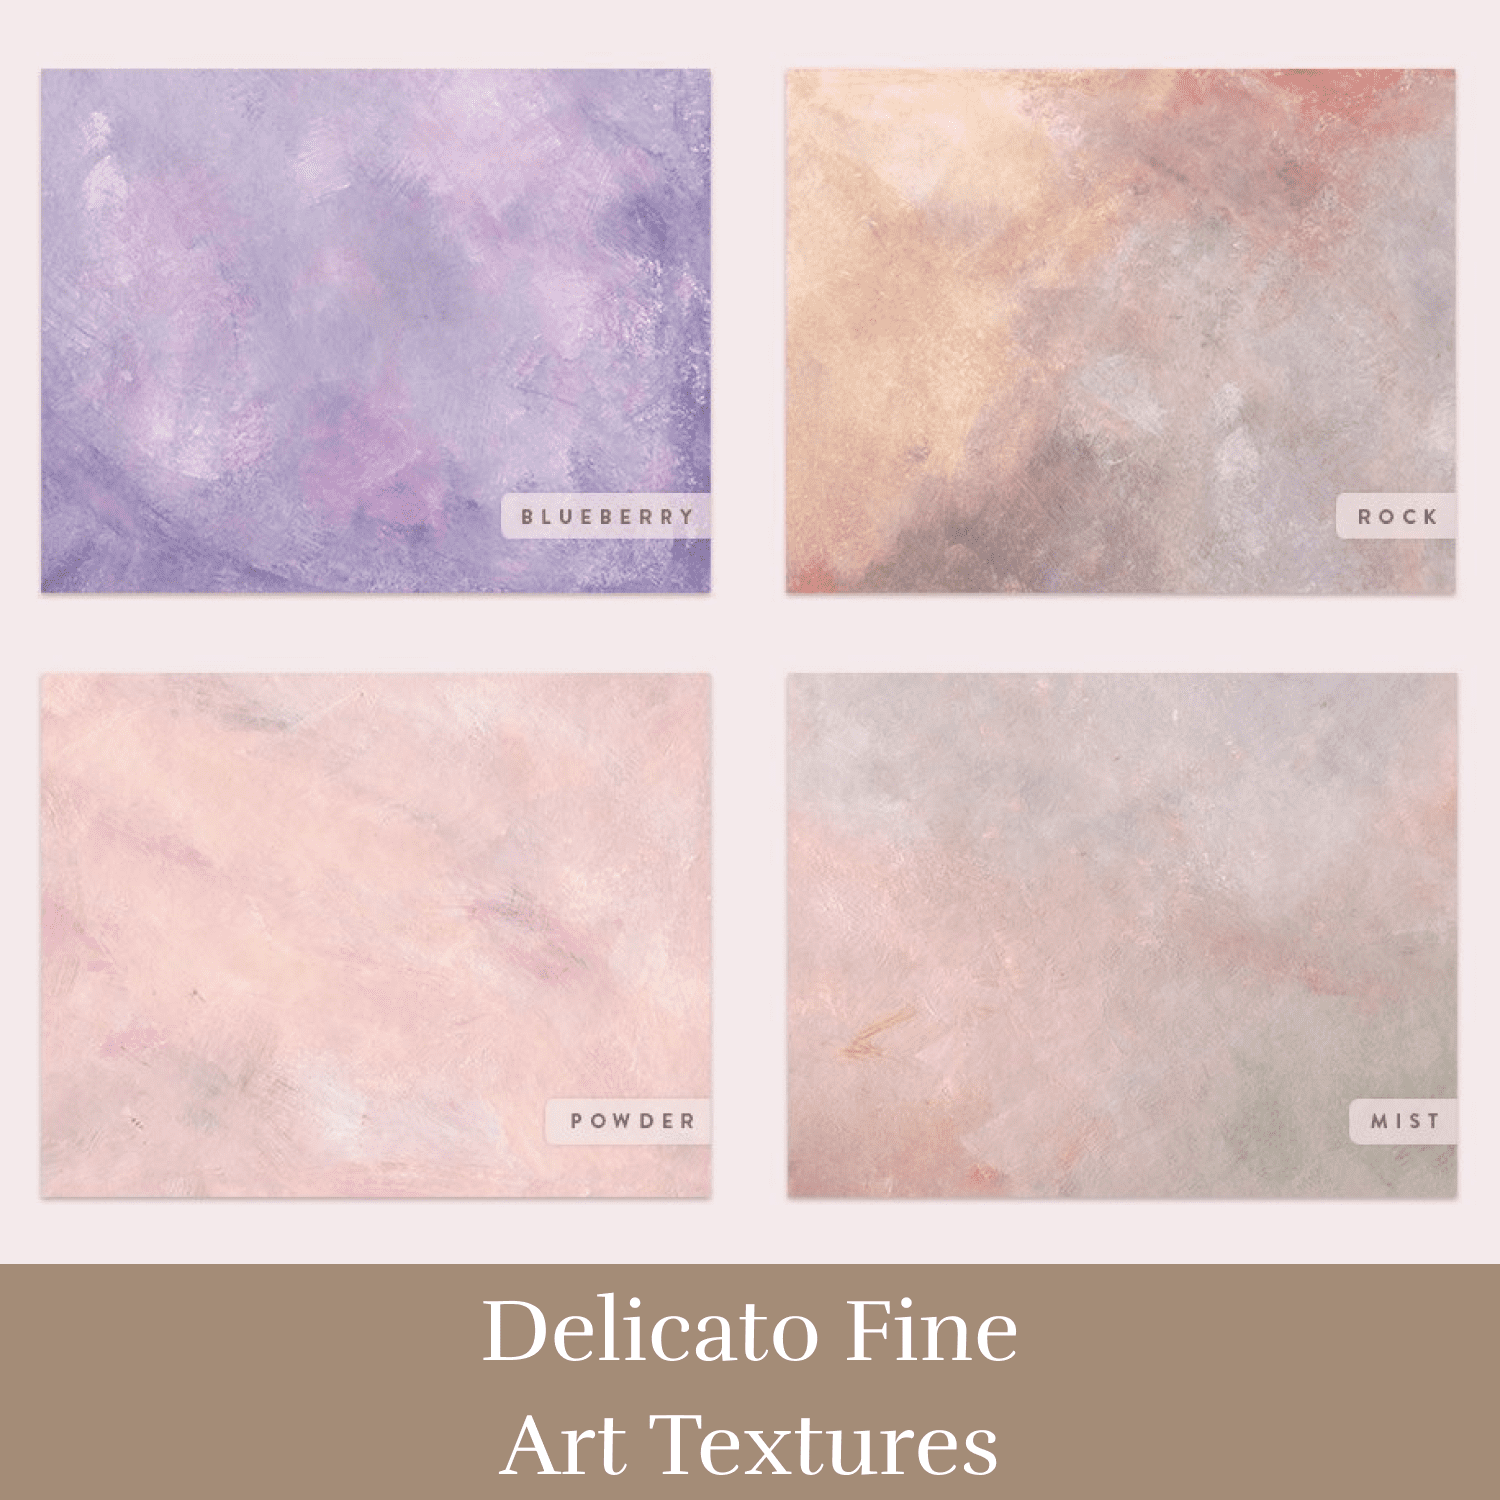 Delicato Fine Art Textures cover.